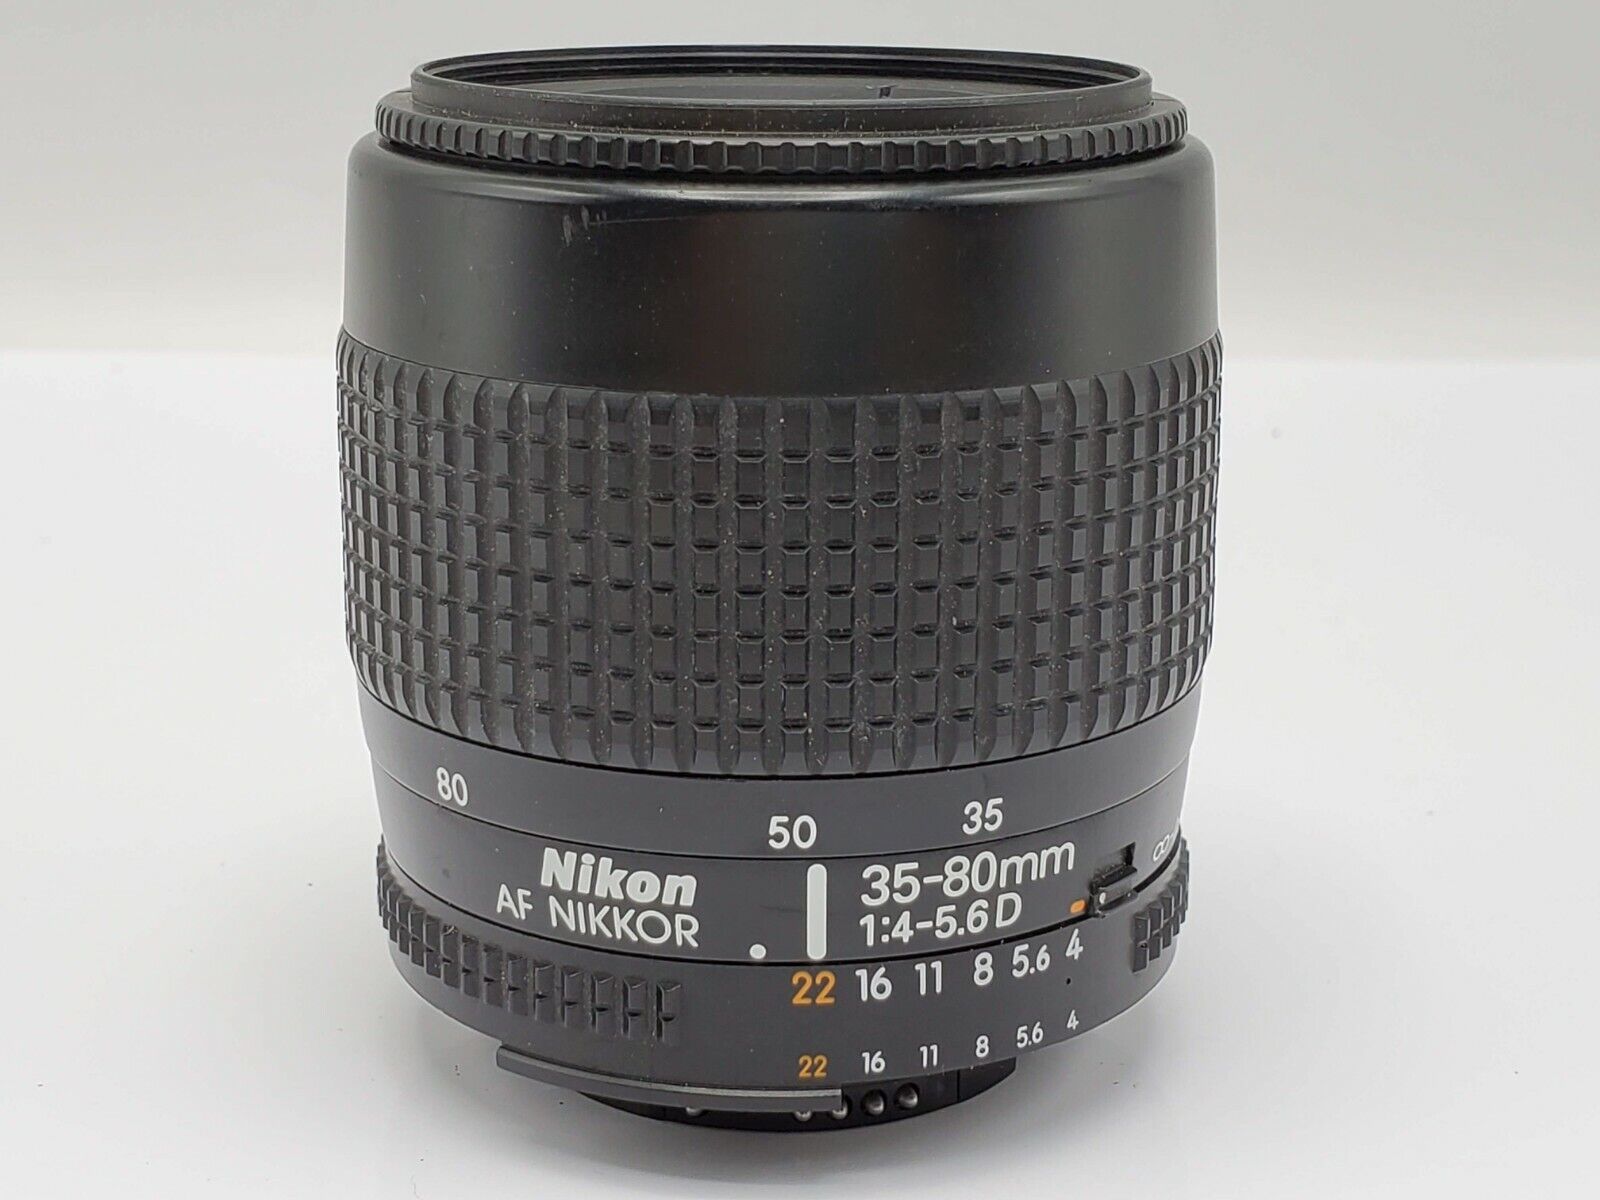 Nikon AF Nikkor 35-80mm F4-5.6 D Zoom Lens for Nikon AF Mount SLR Cameras |  eBay